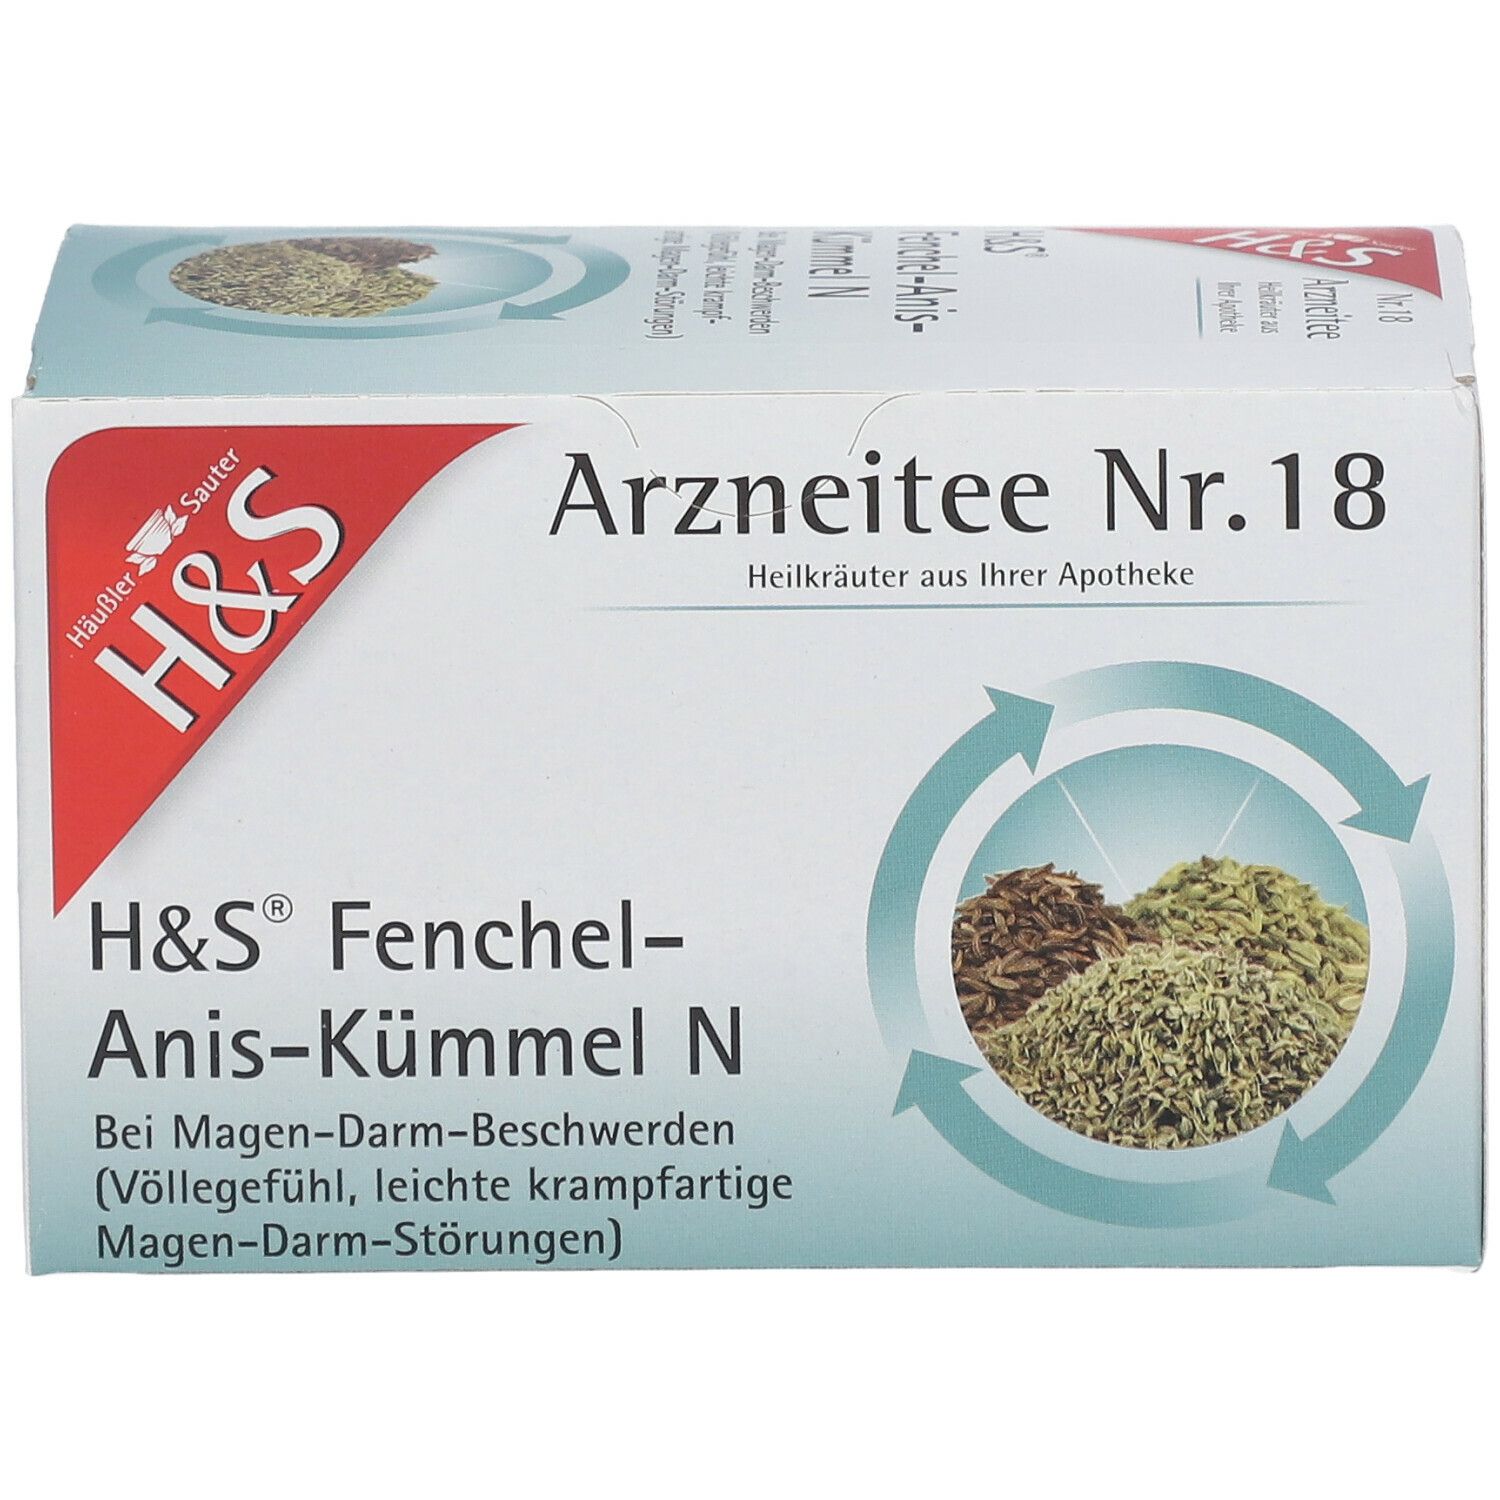 H&S Fenchel-Anis-Kümmel N Nr. 18